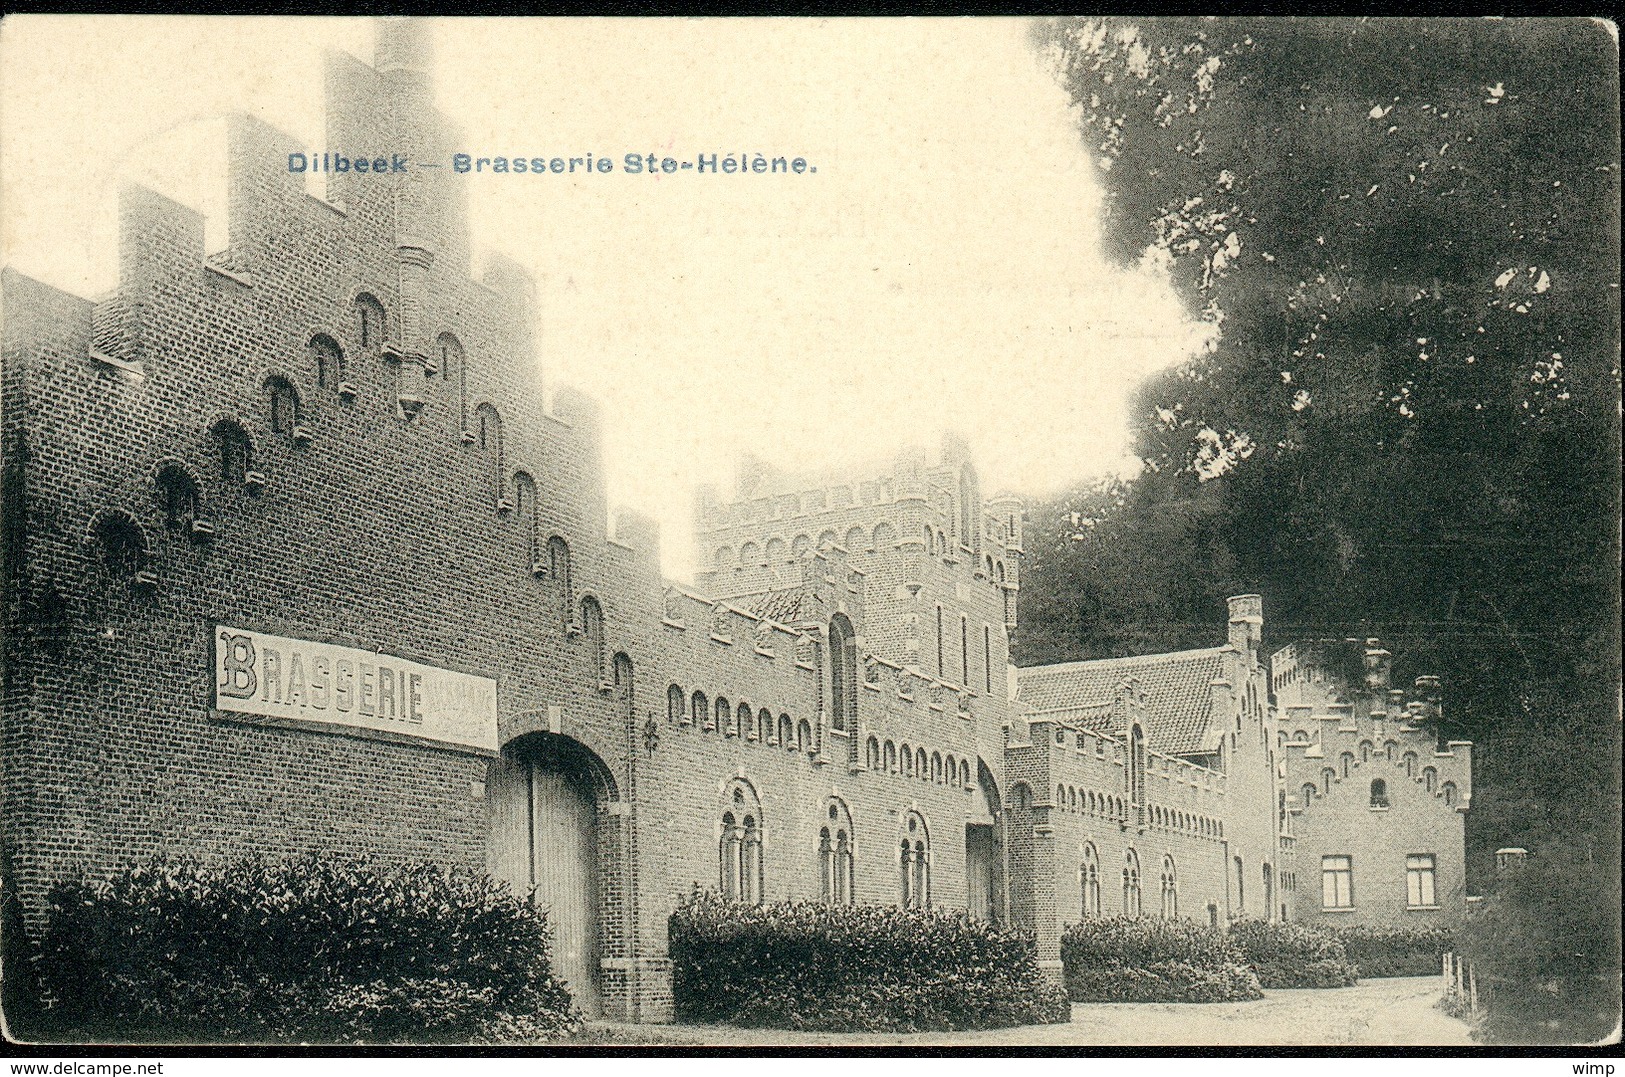 Dilbeek : Brasserie Ste-Hélène - Dilbeek